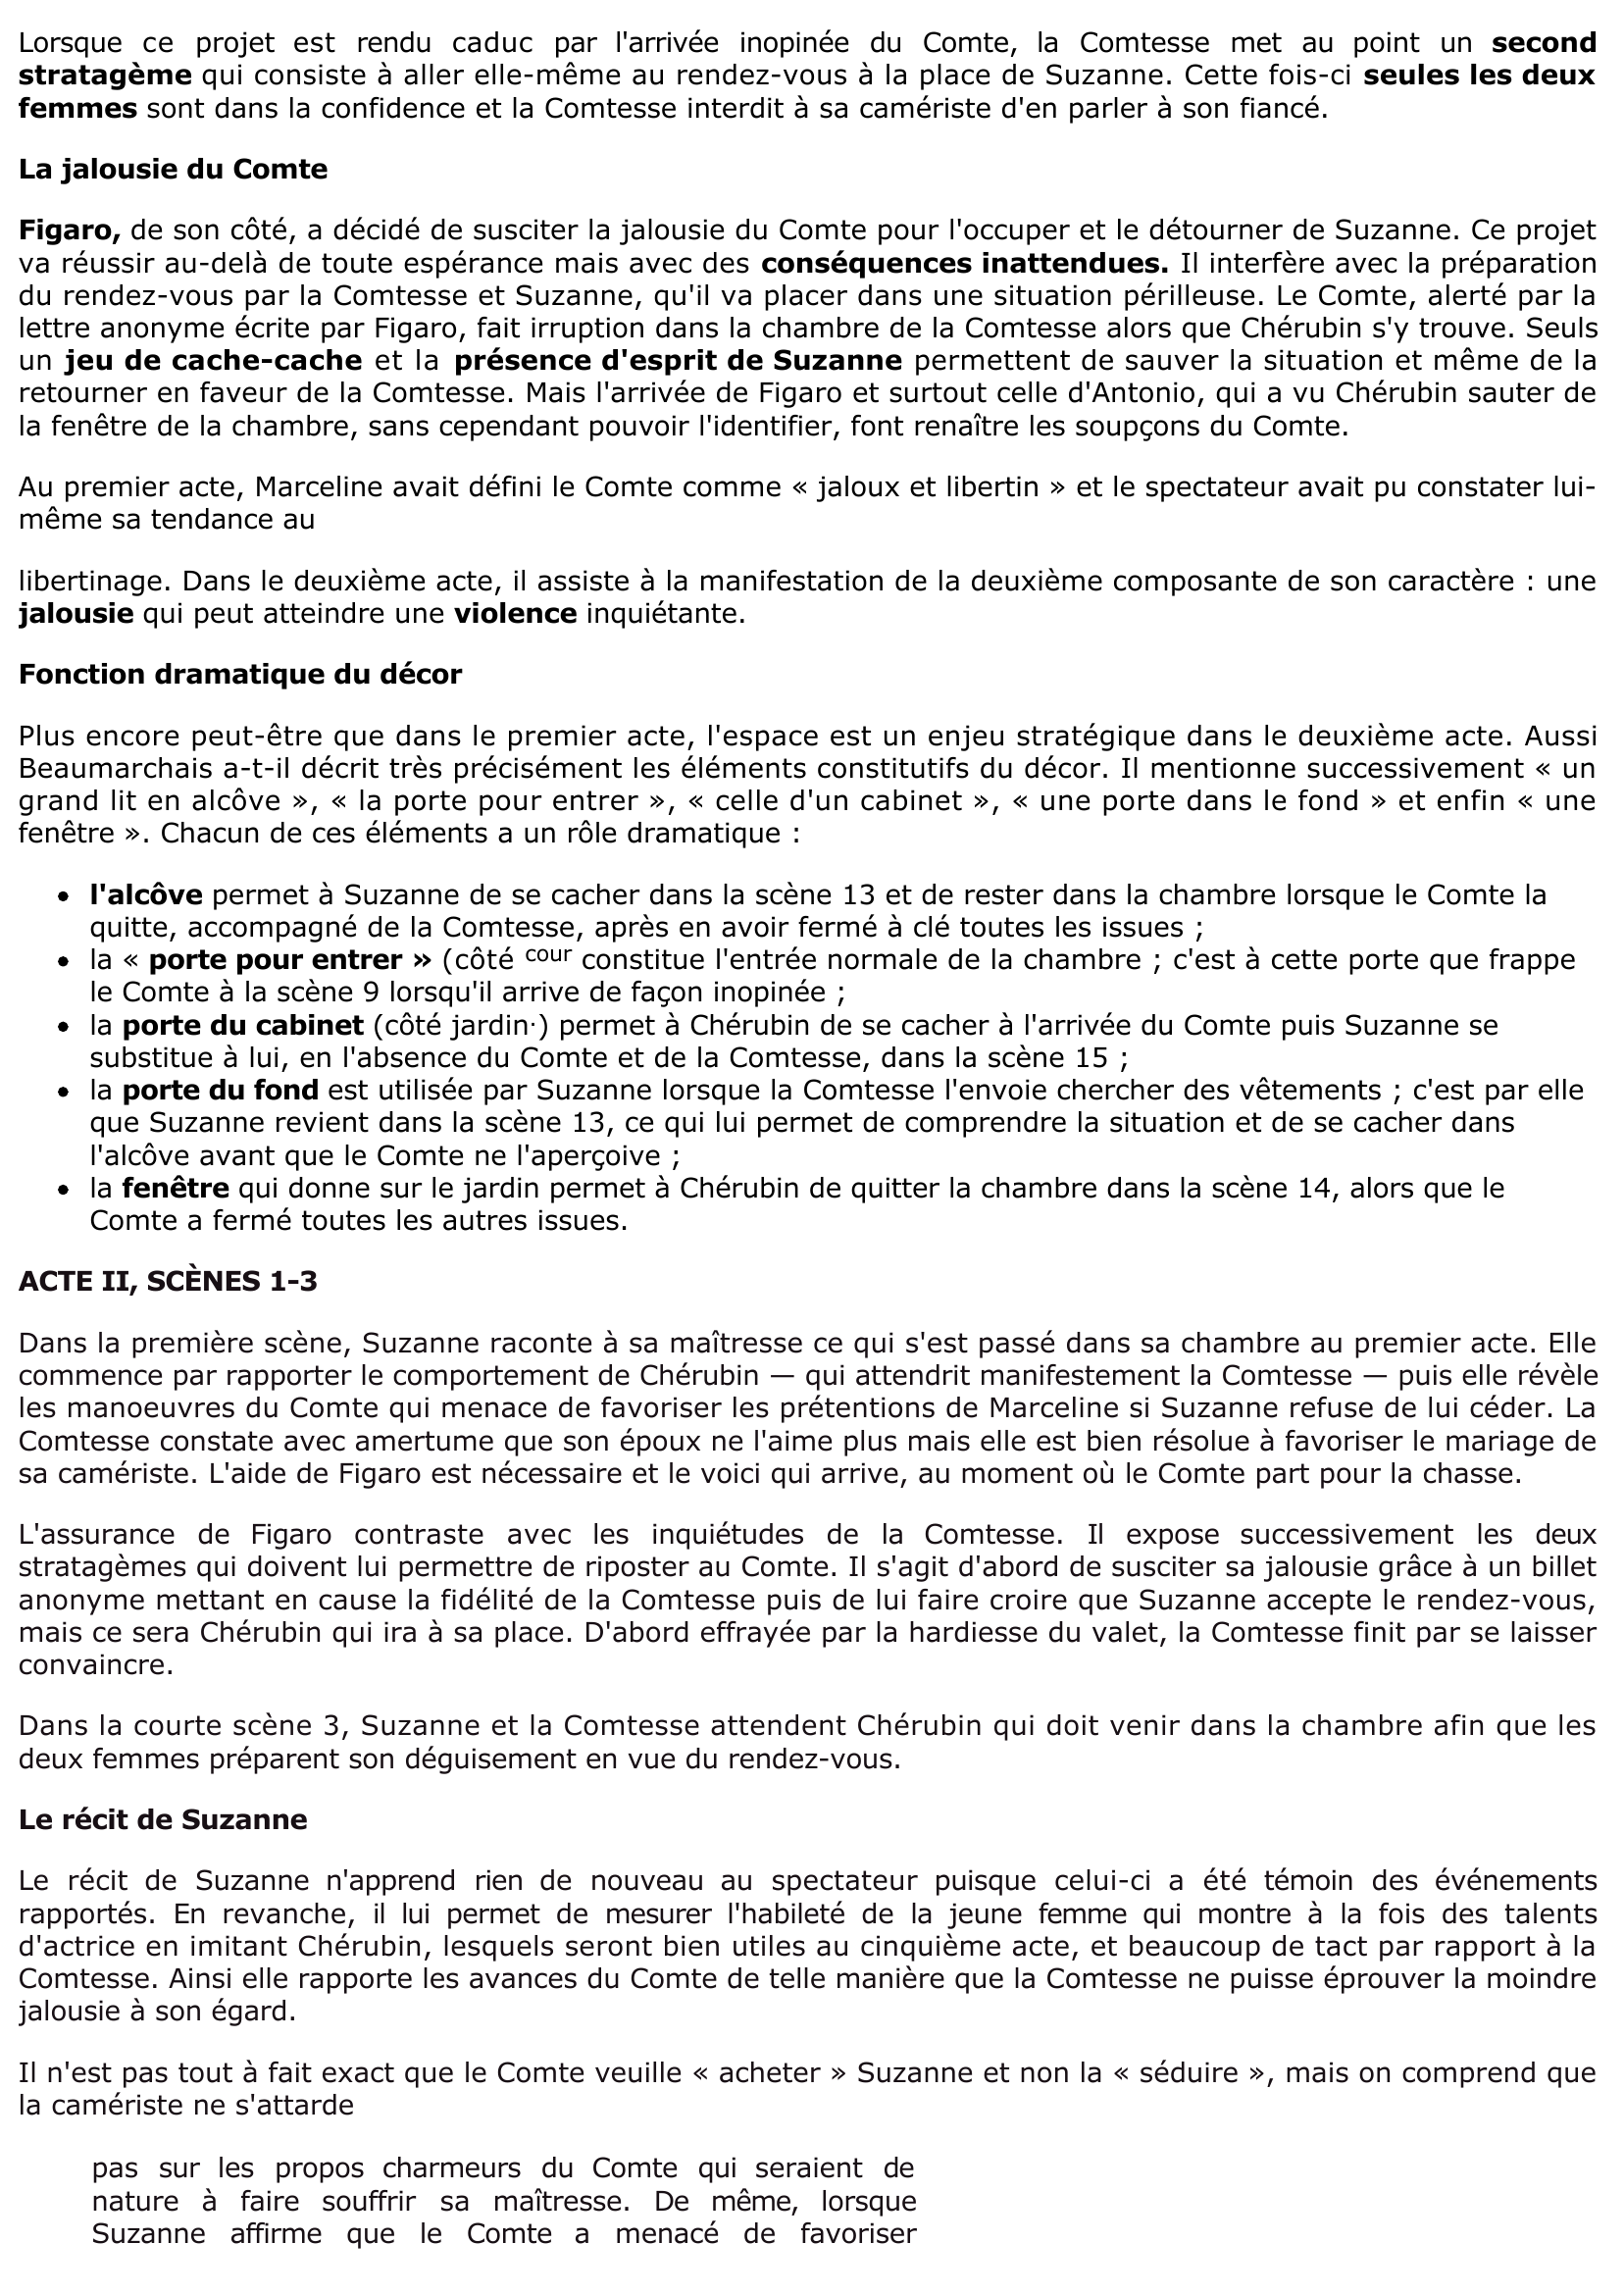 Prévisualisation du document ACTE II, SCÈNES 1-3 - Le mariage de Figaro de Beaumarchais (commentaire)